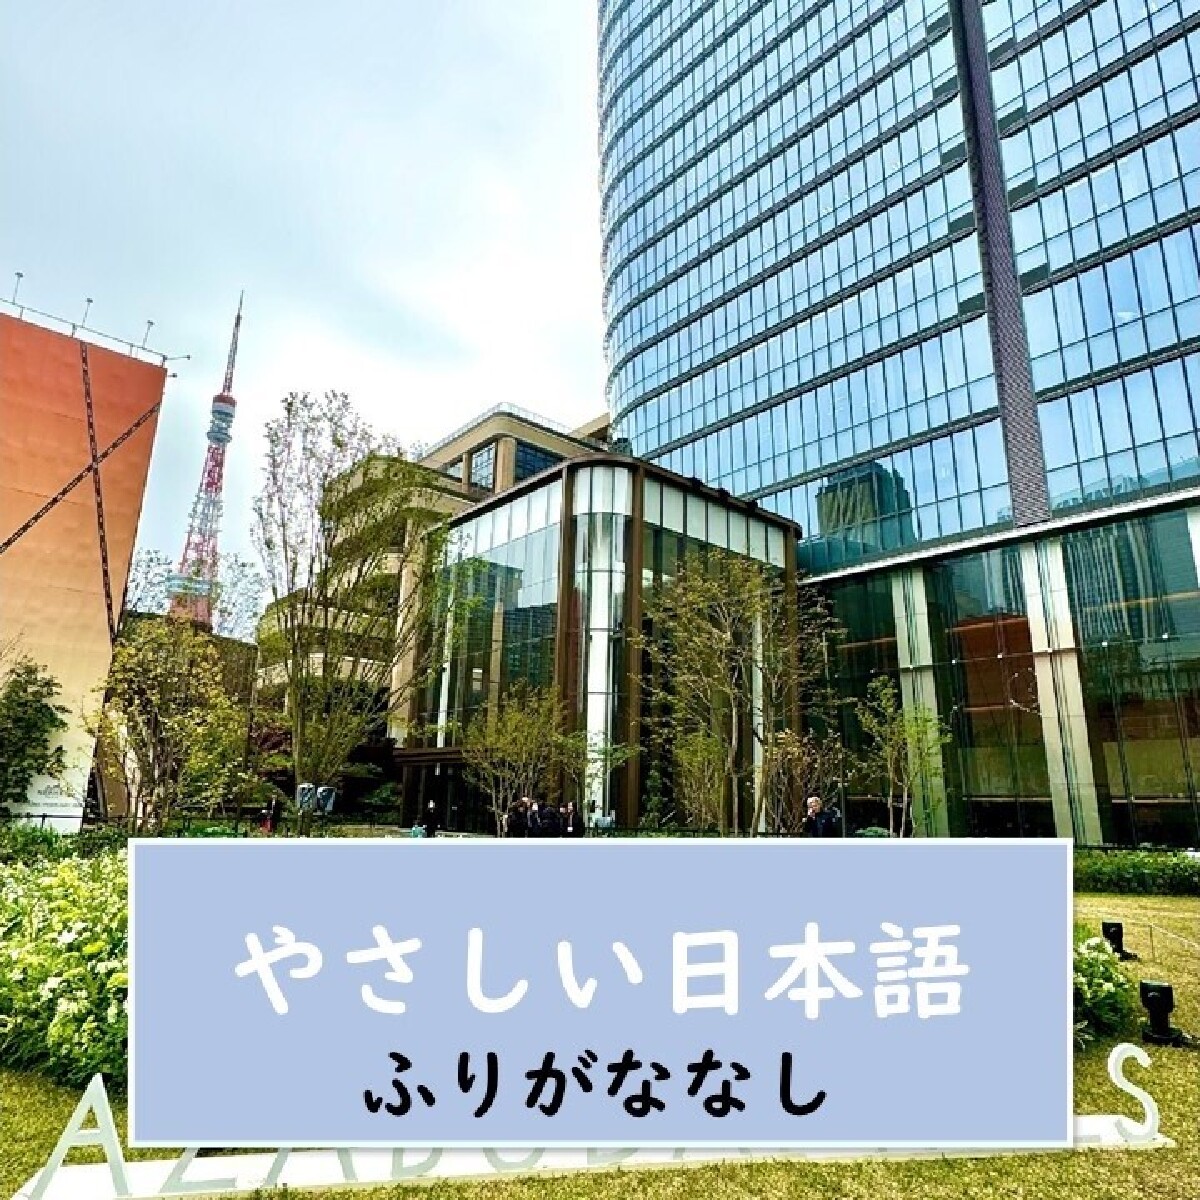 【東京（とうきょう）・新しい観光スポット】 日本で一番高いビル、『麻布台（あざぶだい）ヒルズ』から 東京タワーを見ましょう！【やさしい日本語・ふりがななし】